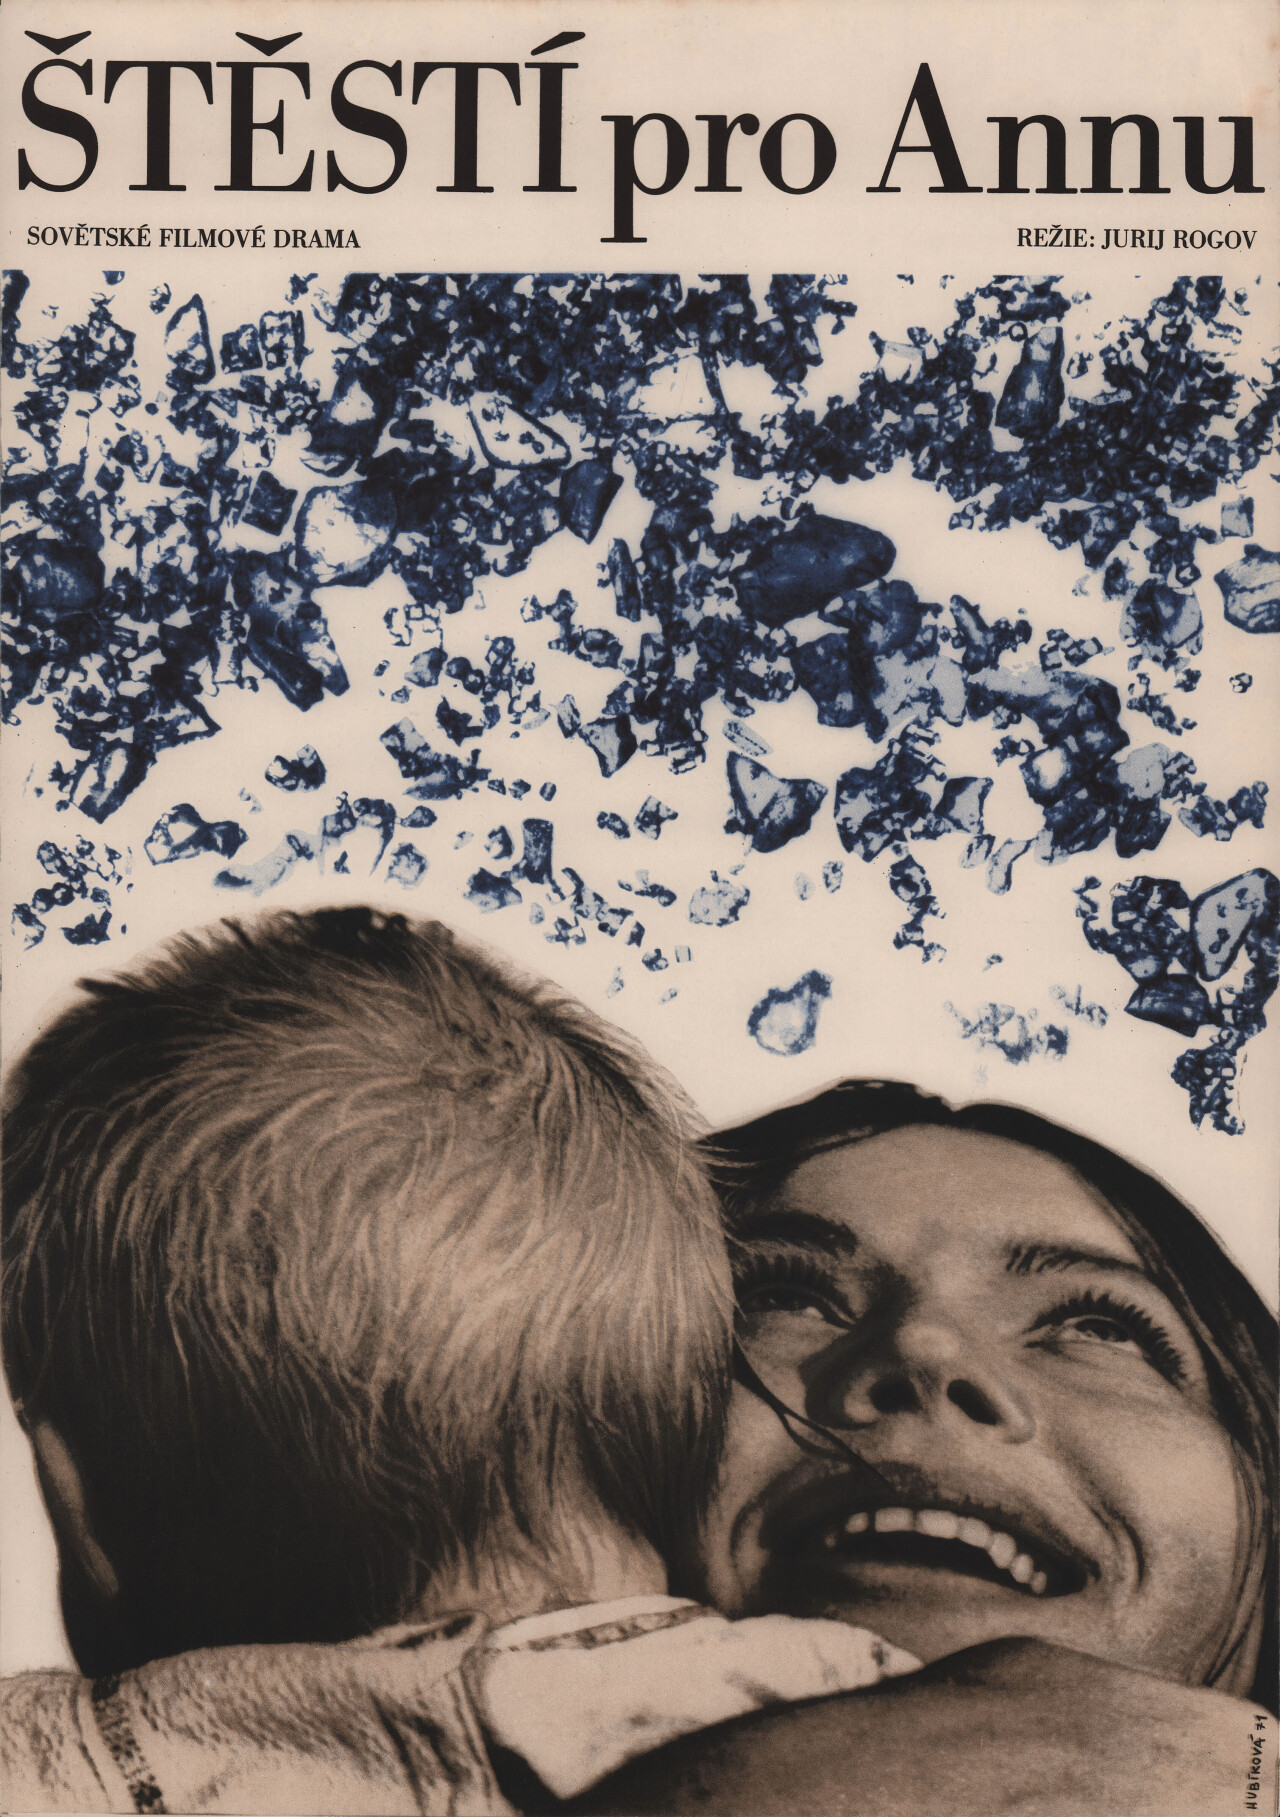 Счастье Анны (Schaste Anny, 1971), режиссёр Юрий Рогов, чехословацкий постер к фильму, автор Алена Губичкова (графический дизайн, 1971 год)